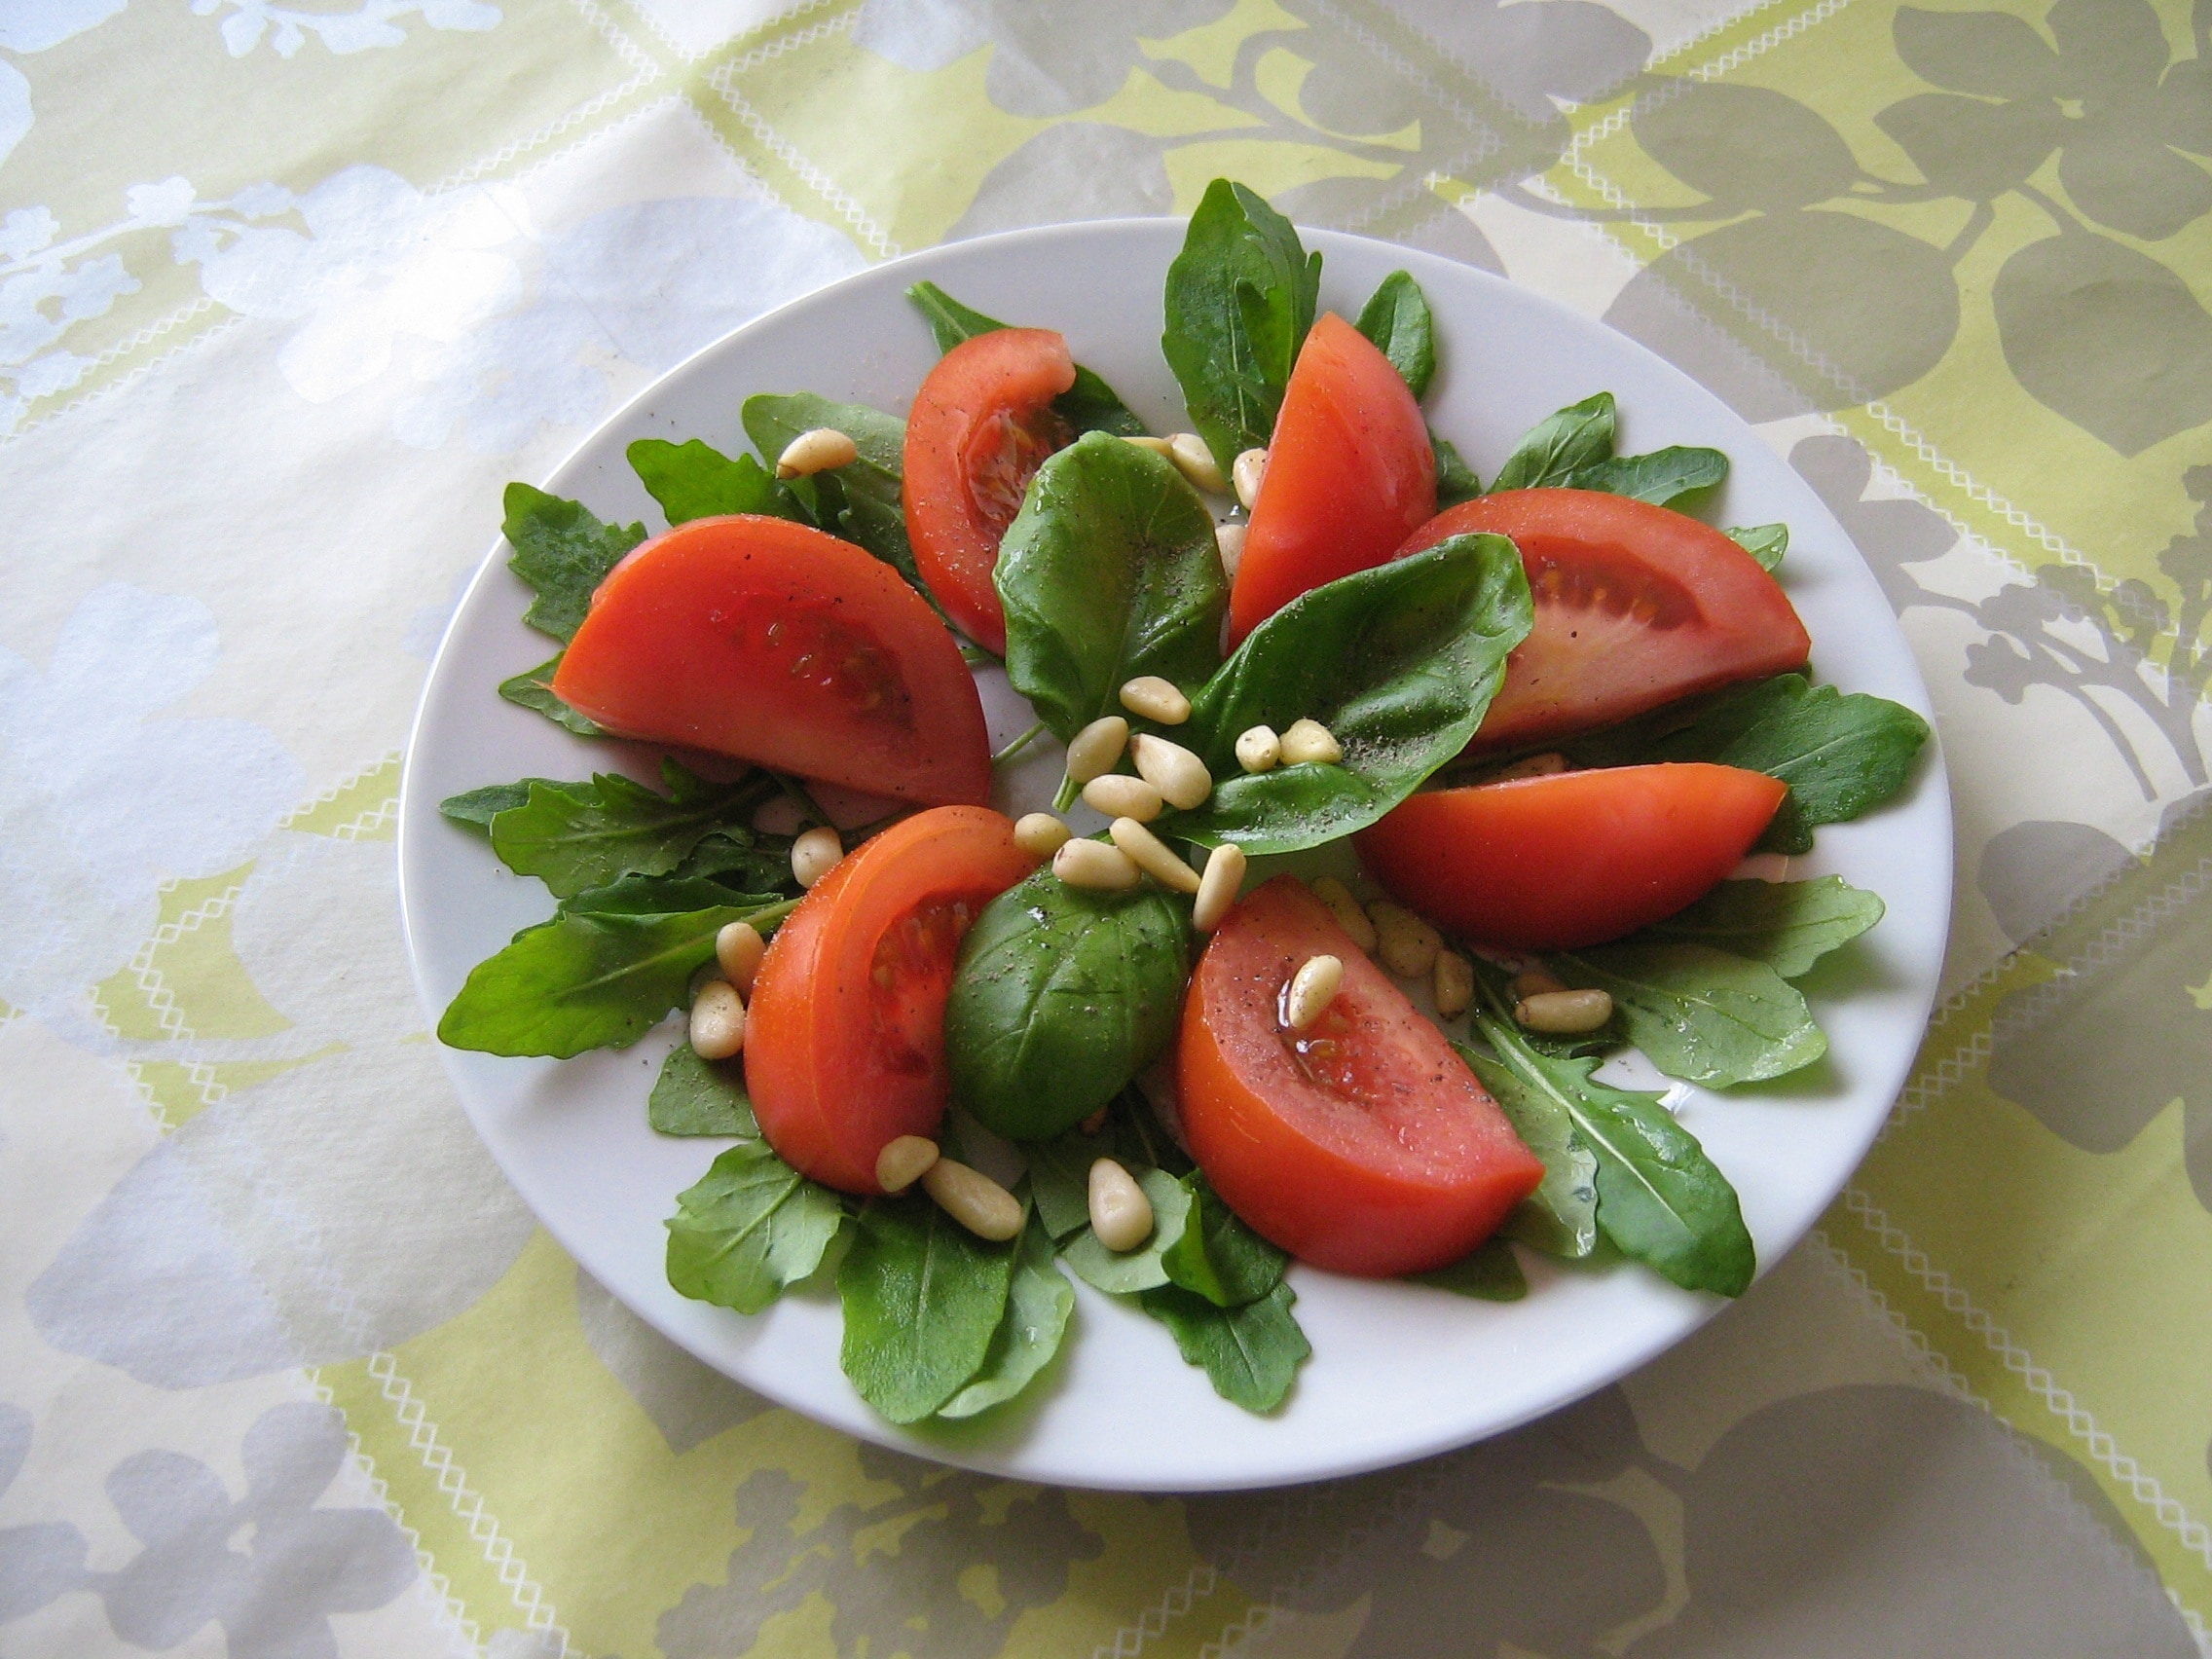 Tomatoes, Food, Salad, Fresh, Healthy, salad, tomato